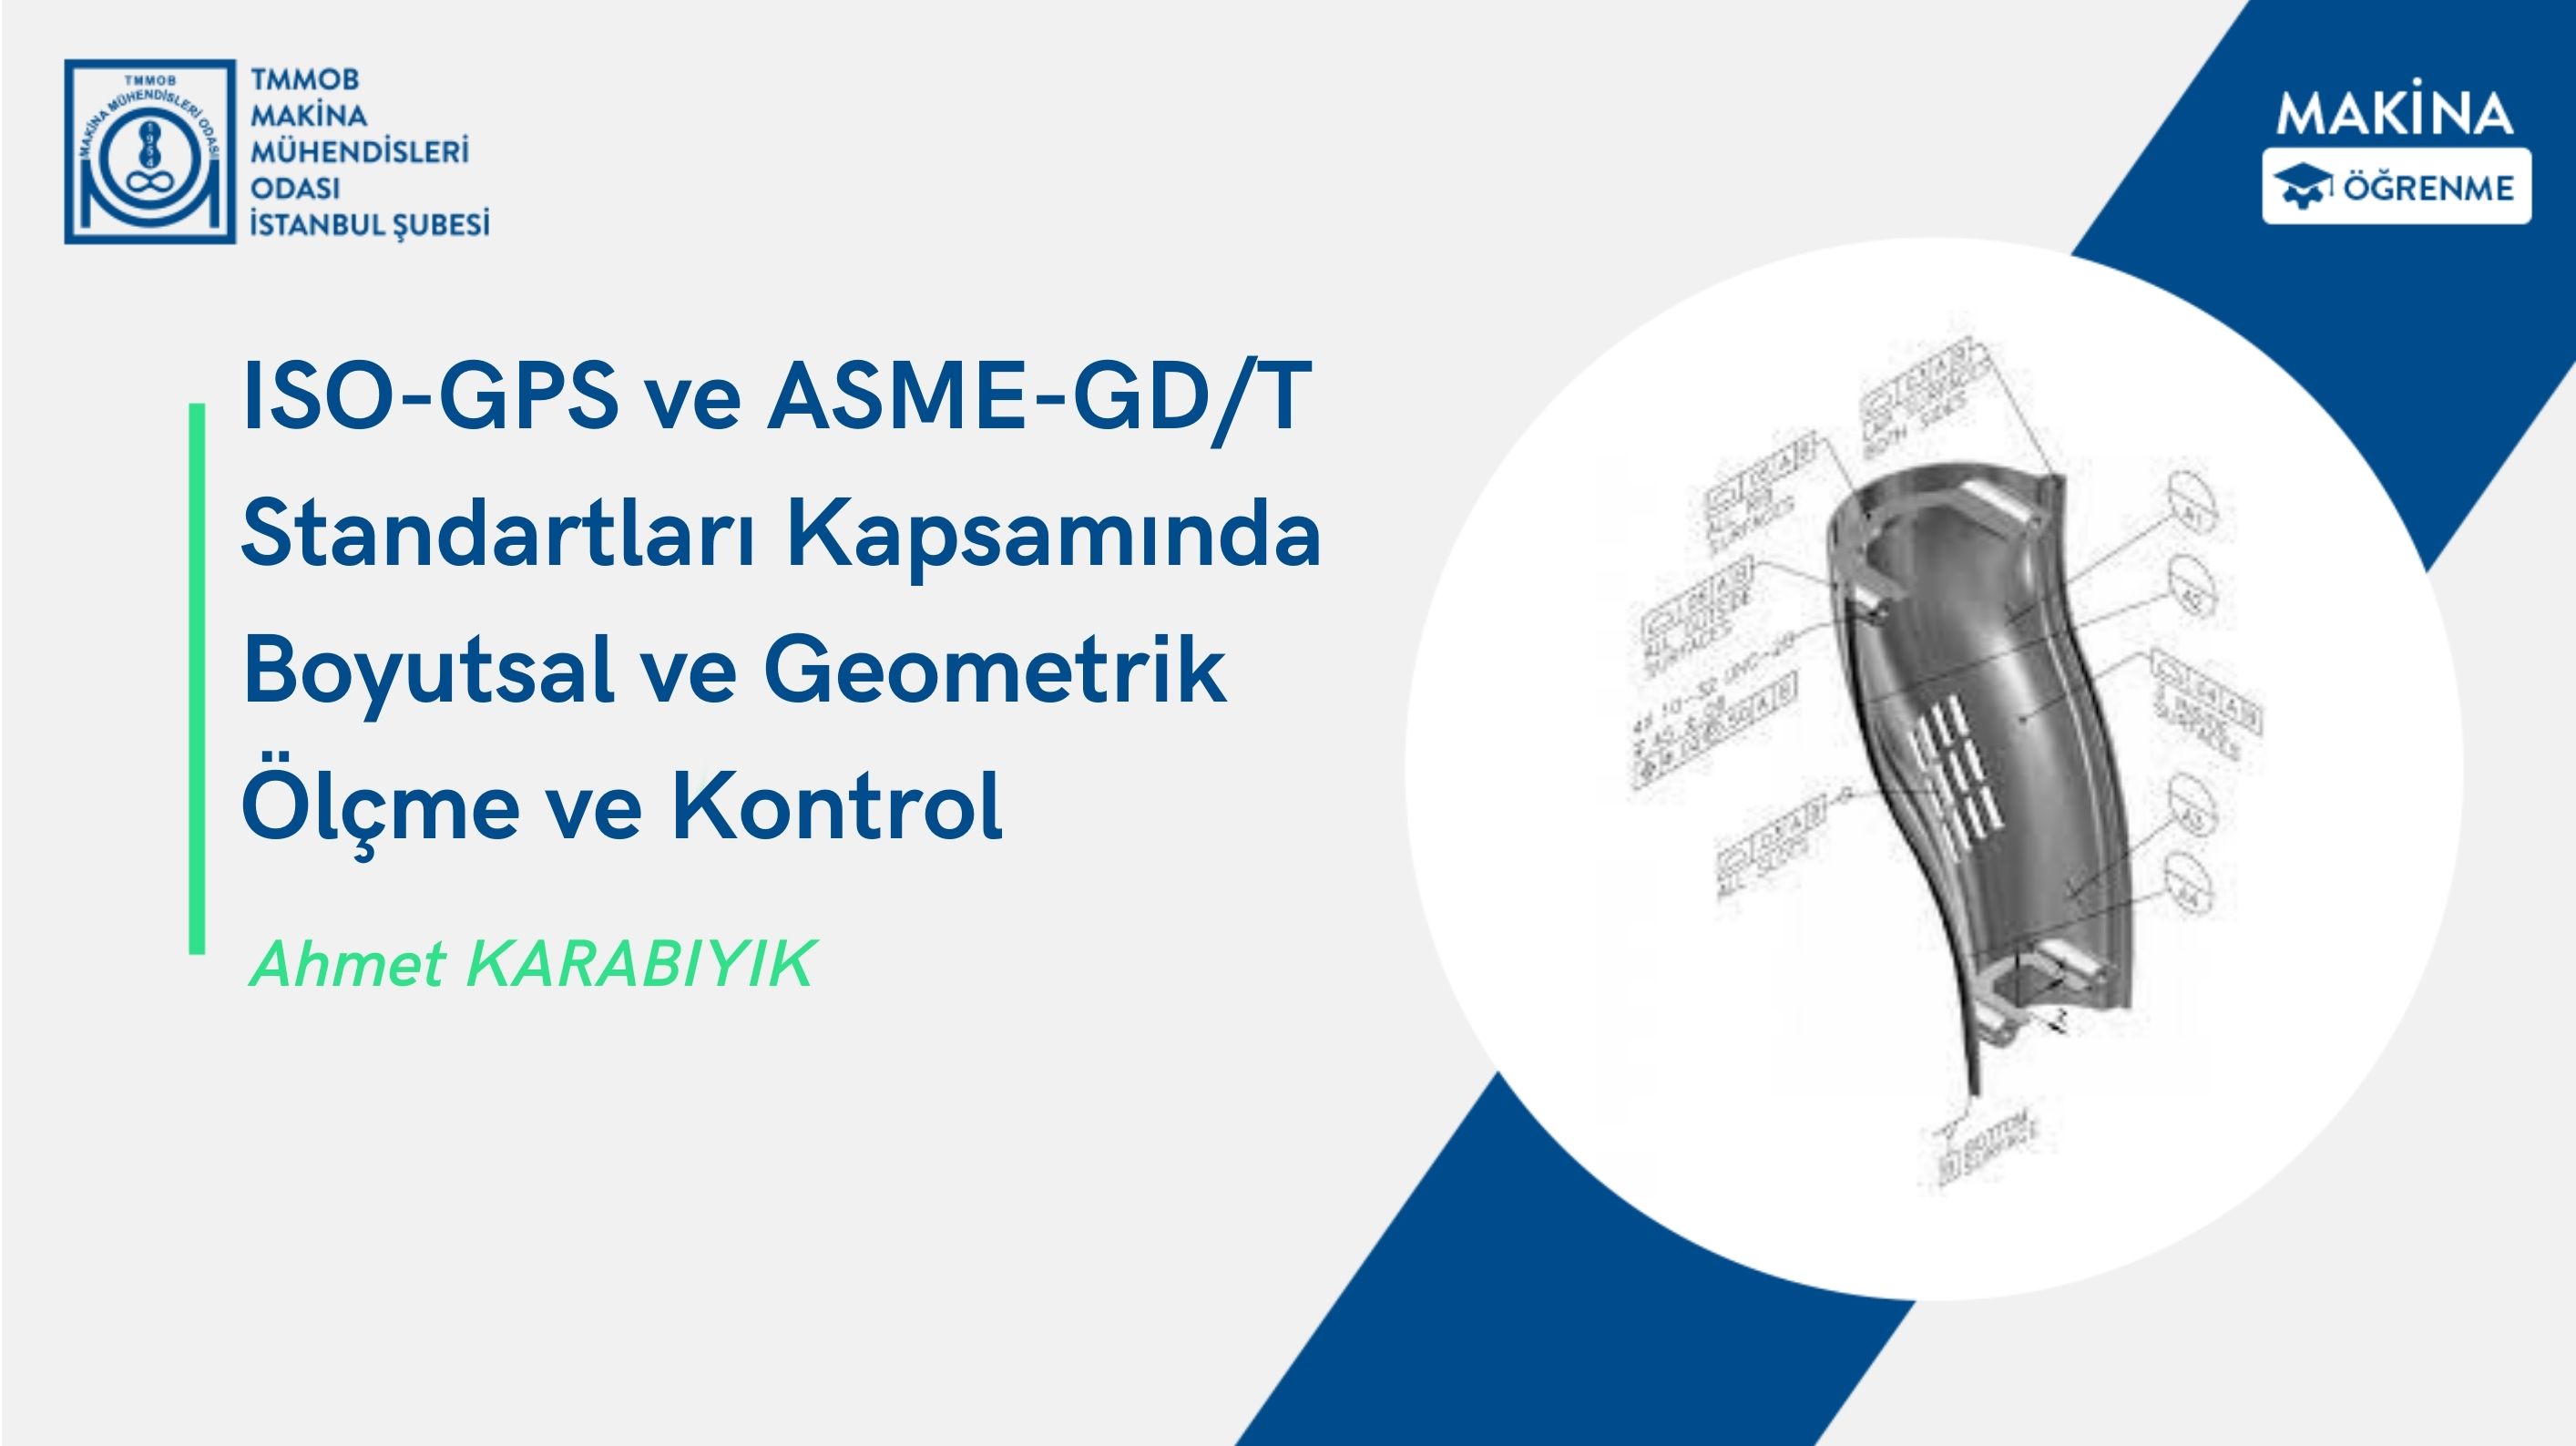 ISO-GPS ve ASME-GD/T  Standartları Kapsamında Boyutsal ve Geometrik  Ölçme ve Kontrol